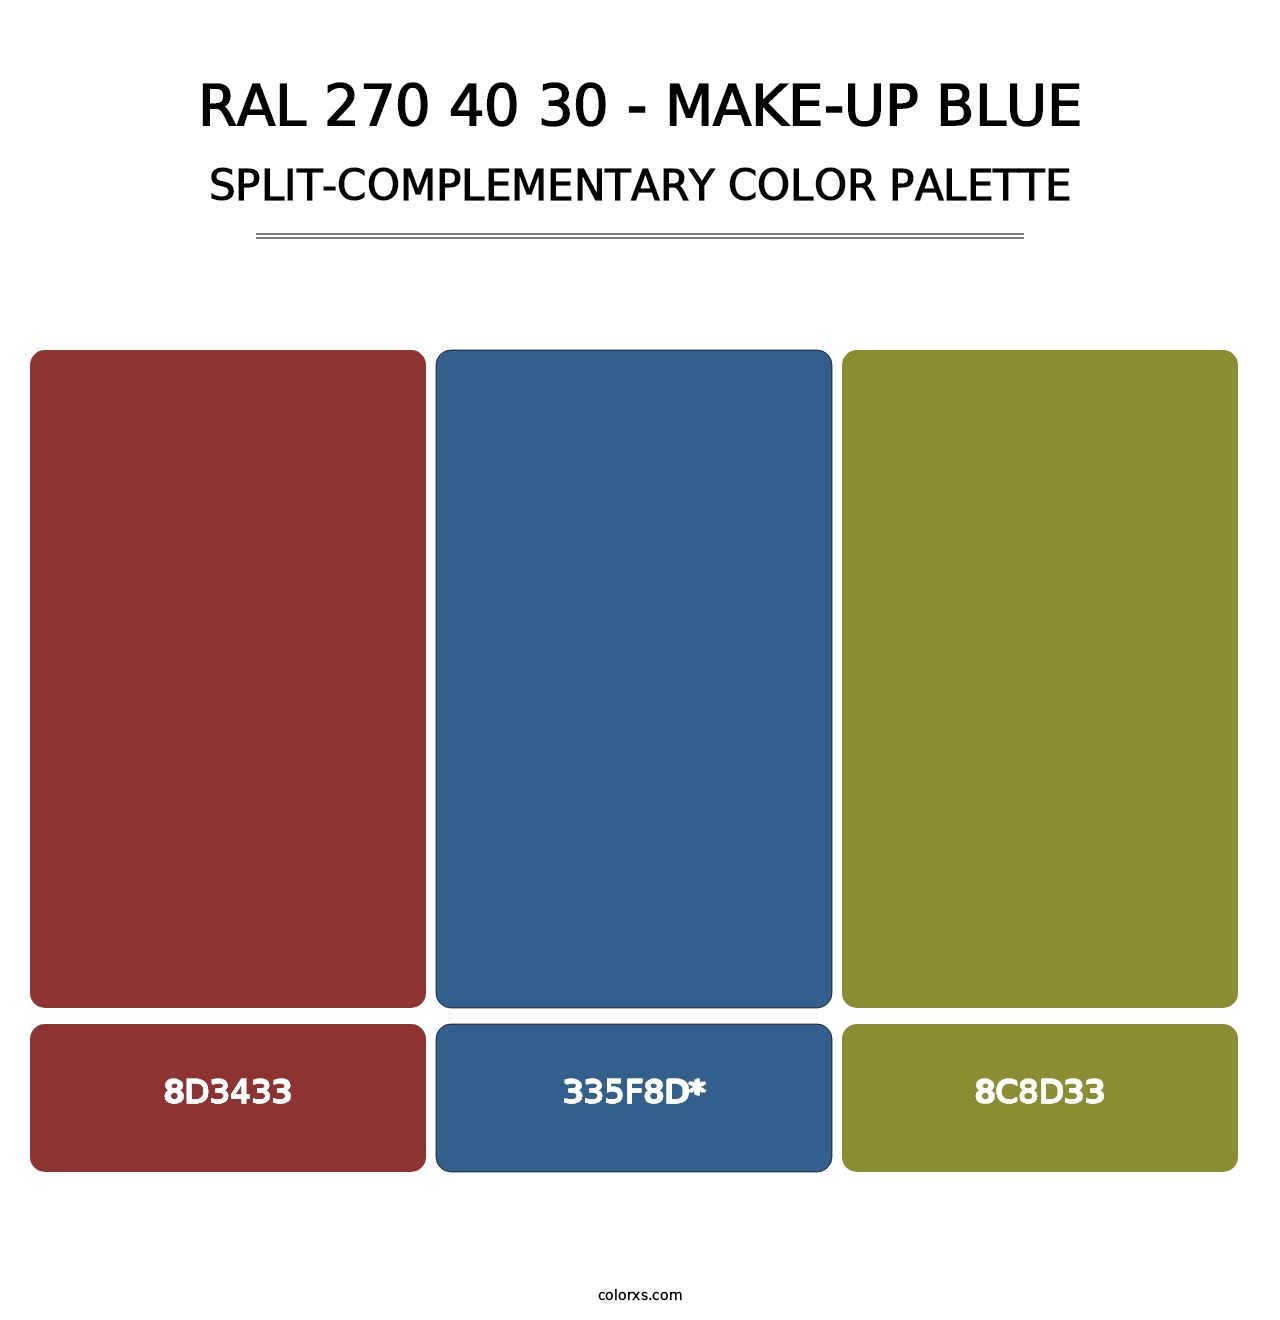 RAL 270 40 30 - Make-Up Blue - Split-Complementary Color Palette